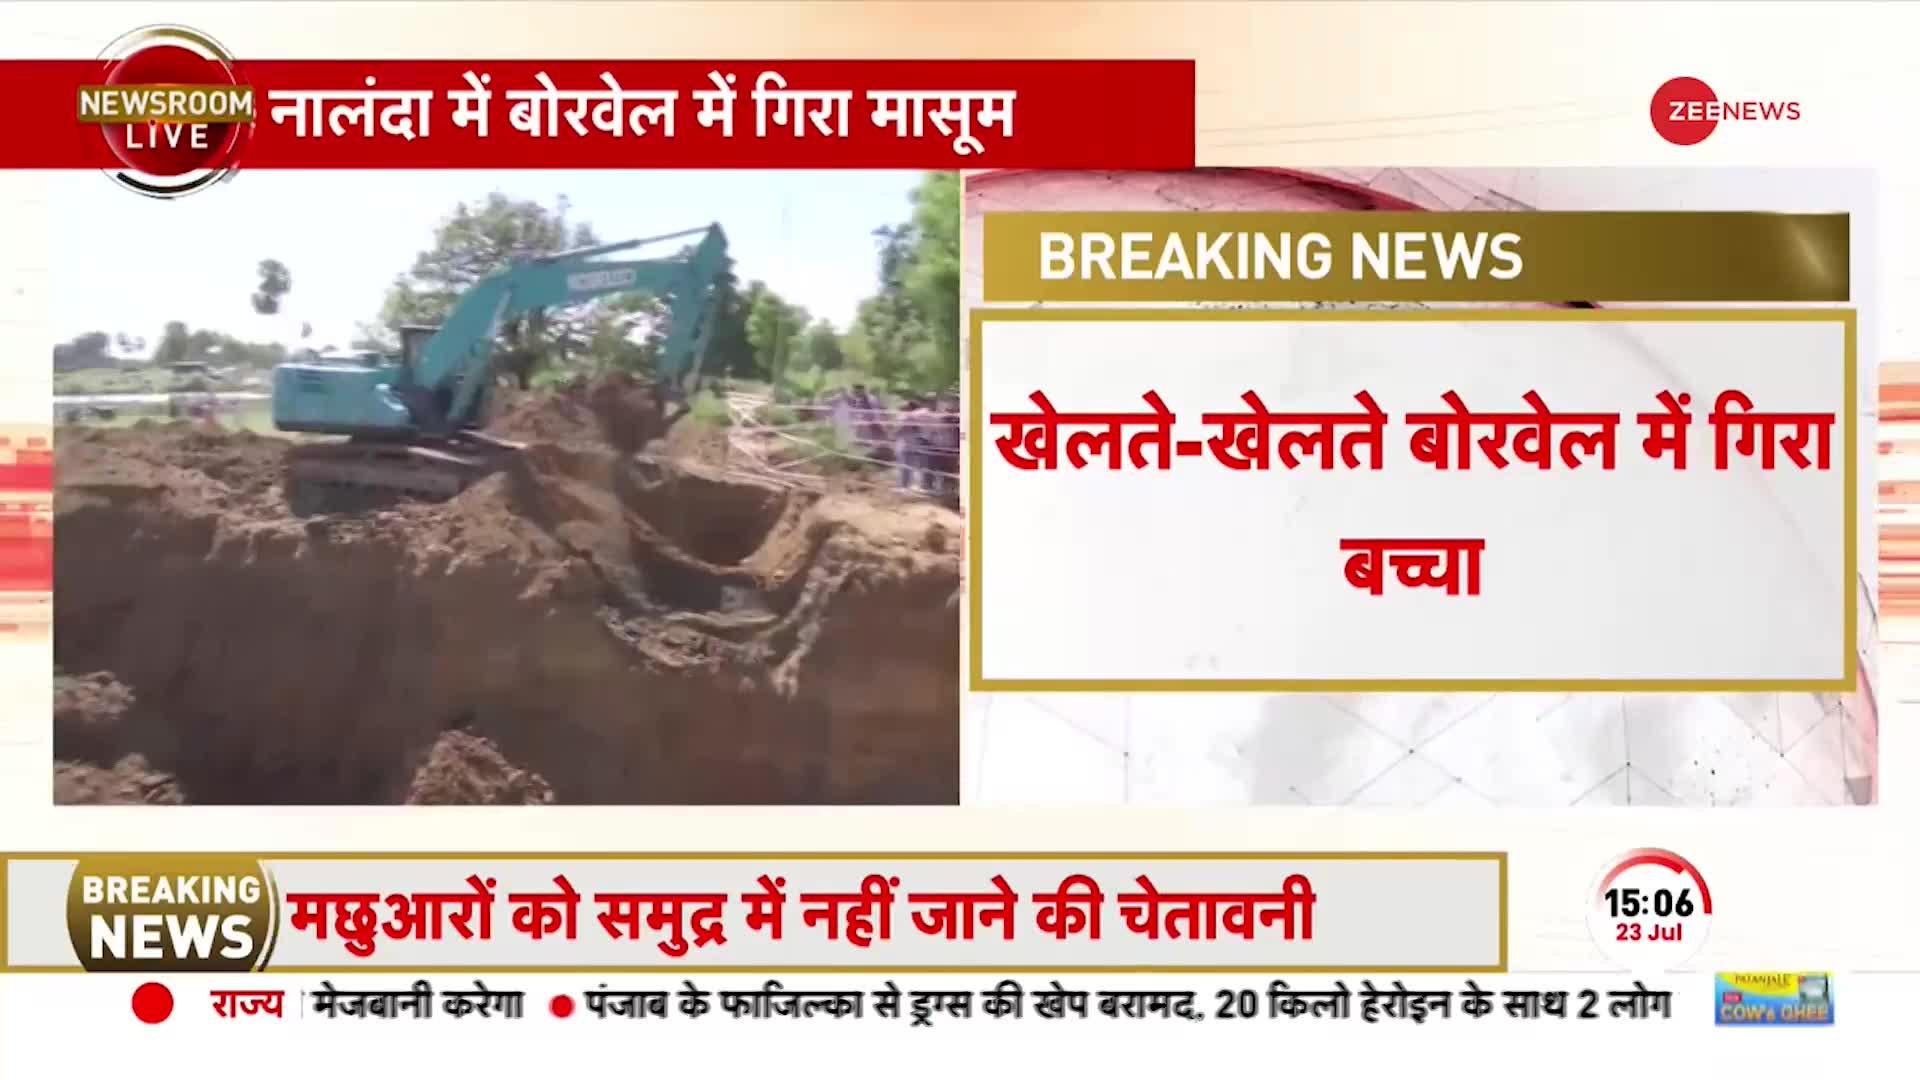 Bihar Borewell News: बिहार में भारी लापरवाही, बोरवेल में गिरा 3 साल का मासूम!